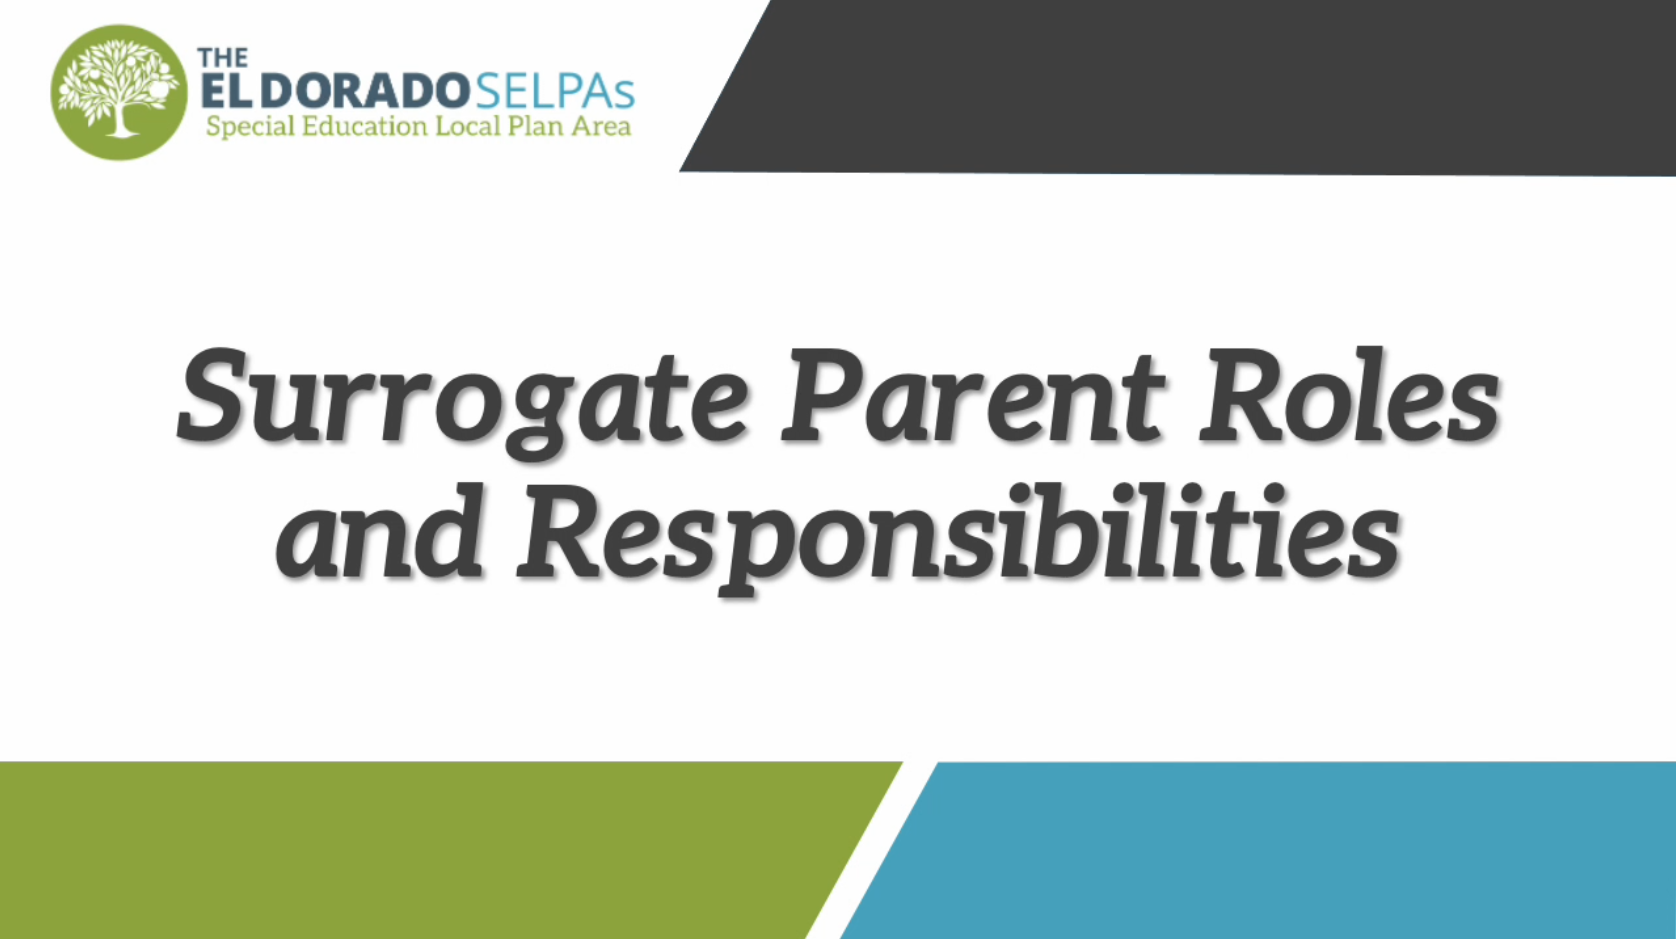 Surrogate Parent Roles and Responsibilities Web Module